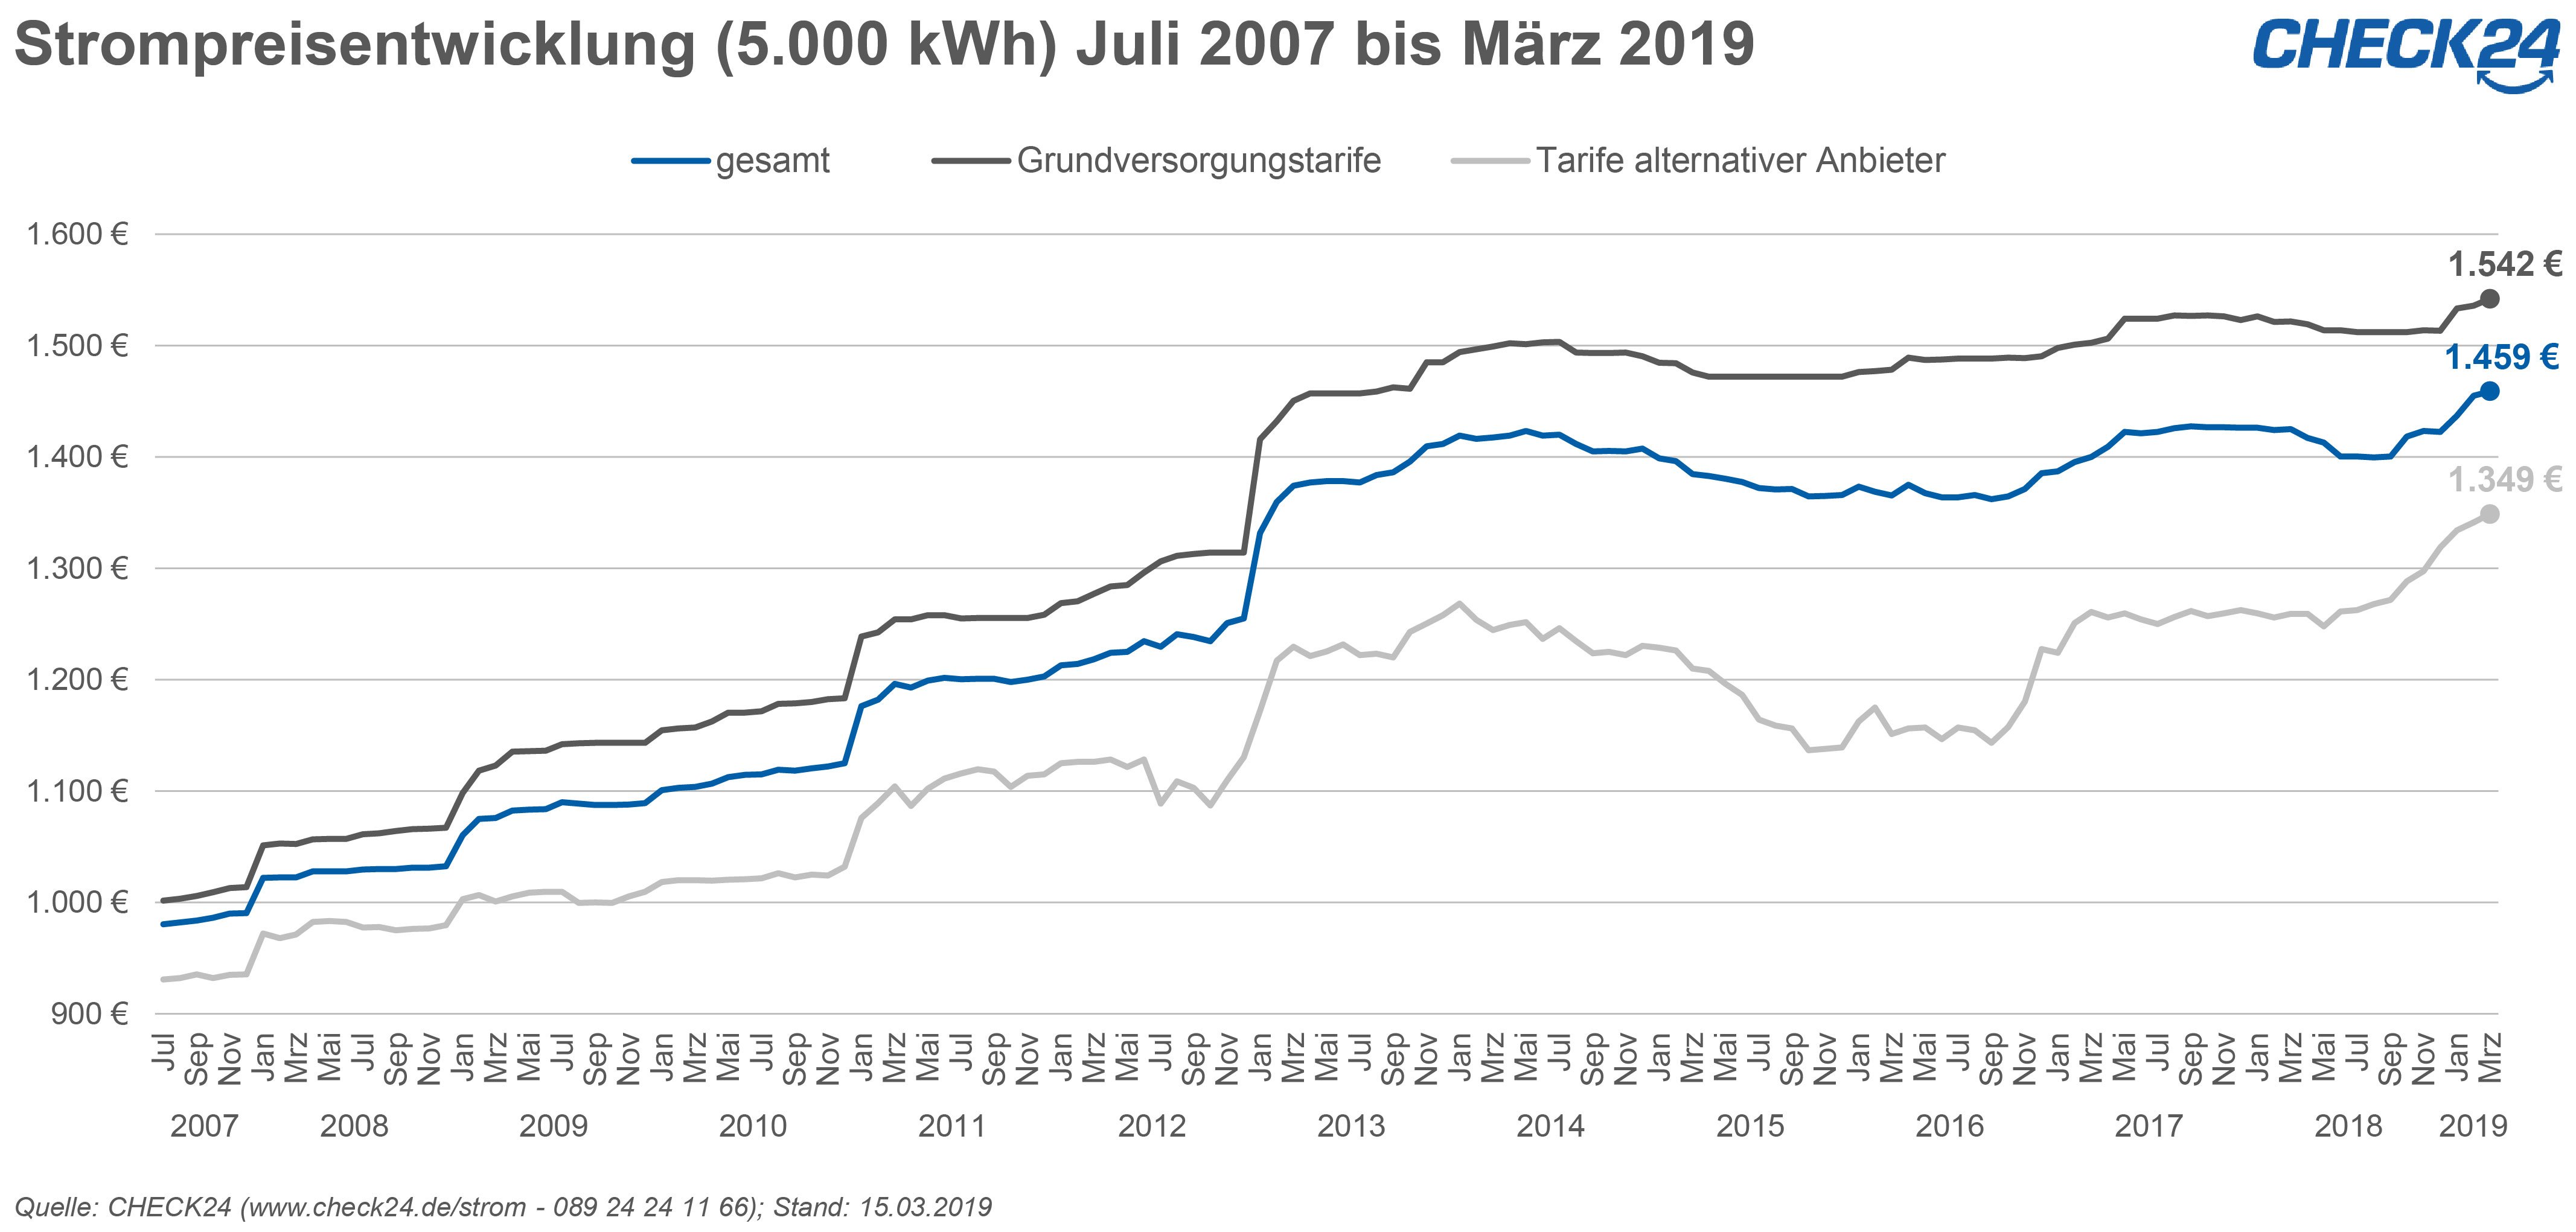 Strom- und Gaspreise im ersten Quartal 2019 auf Rekordniveau | Presseportal